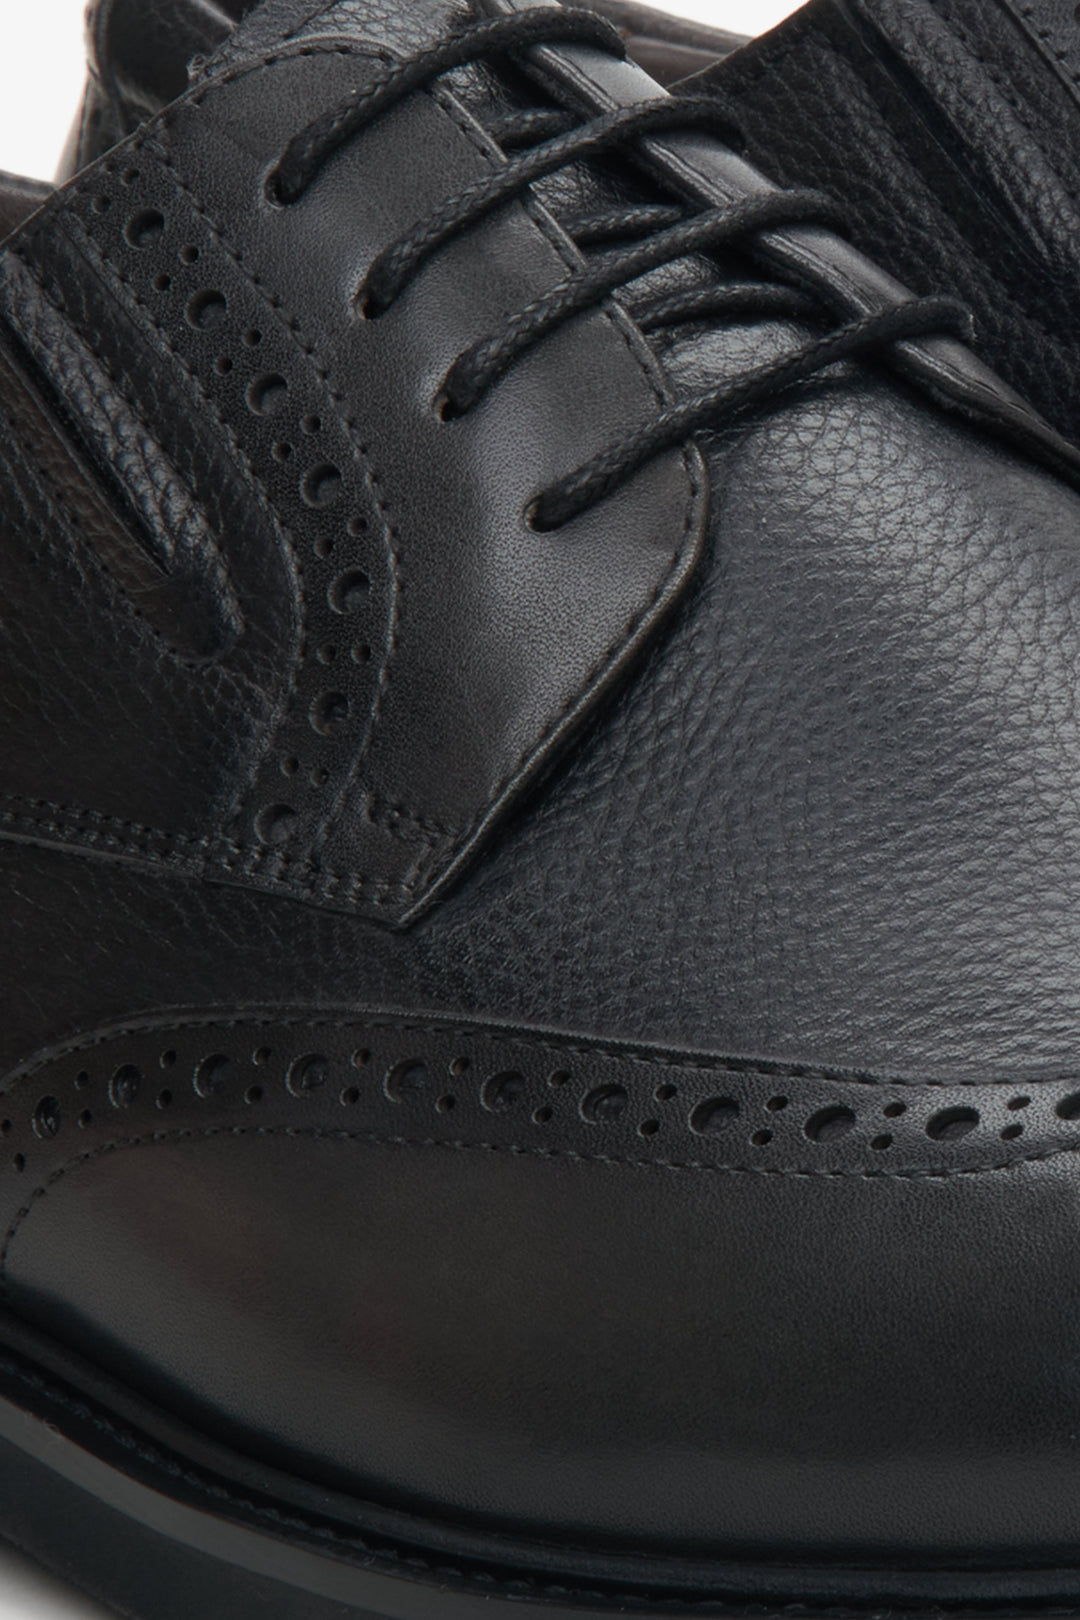  Men's black lace-up shoes - close-up on details.